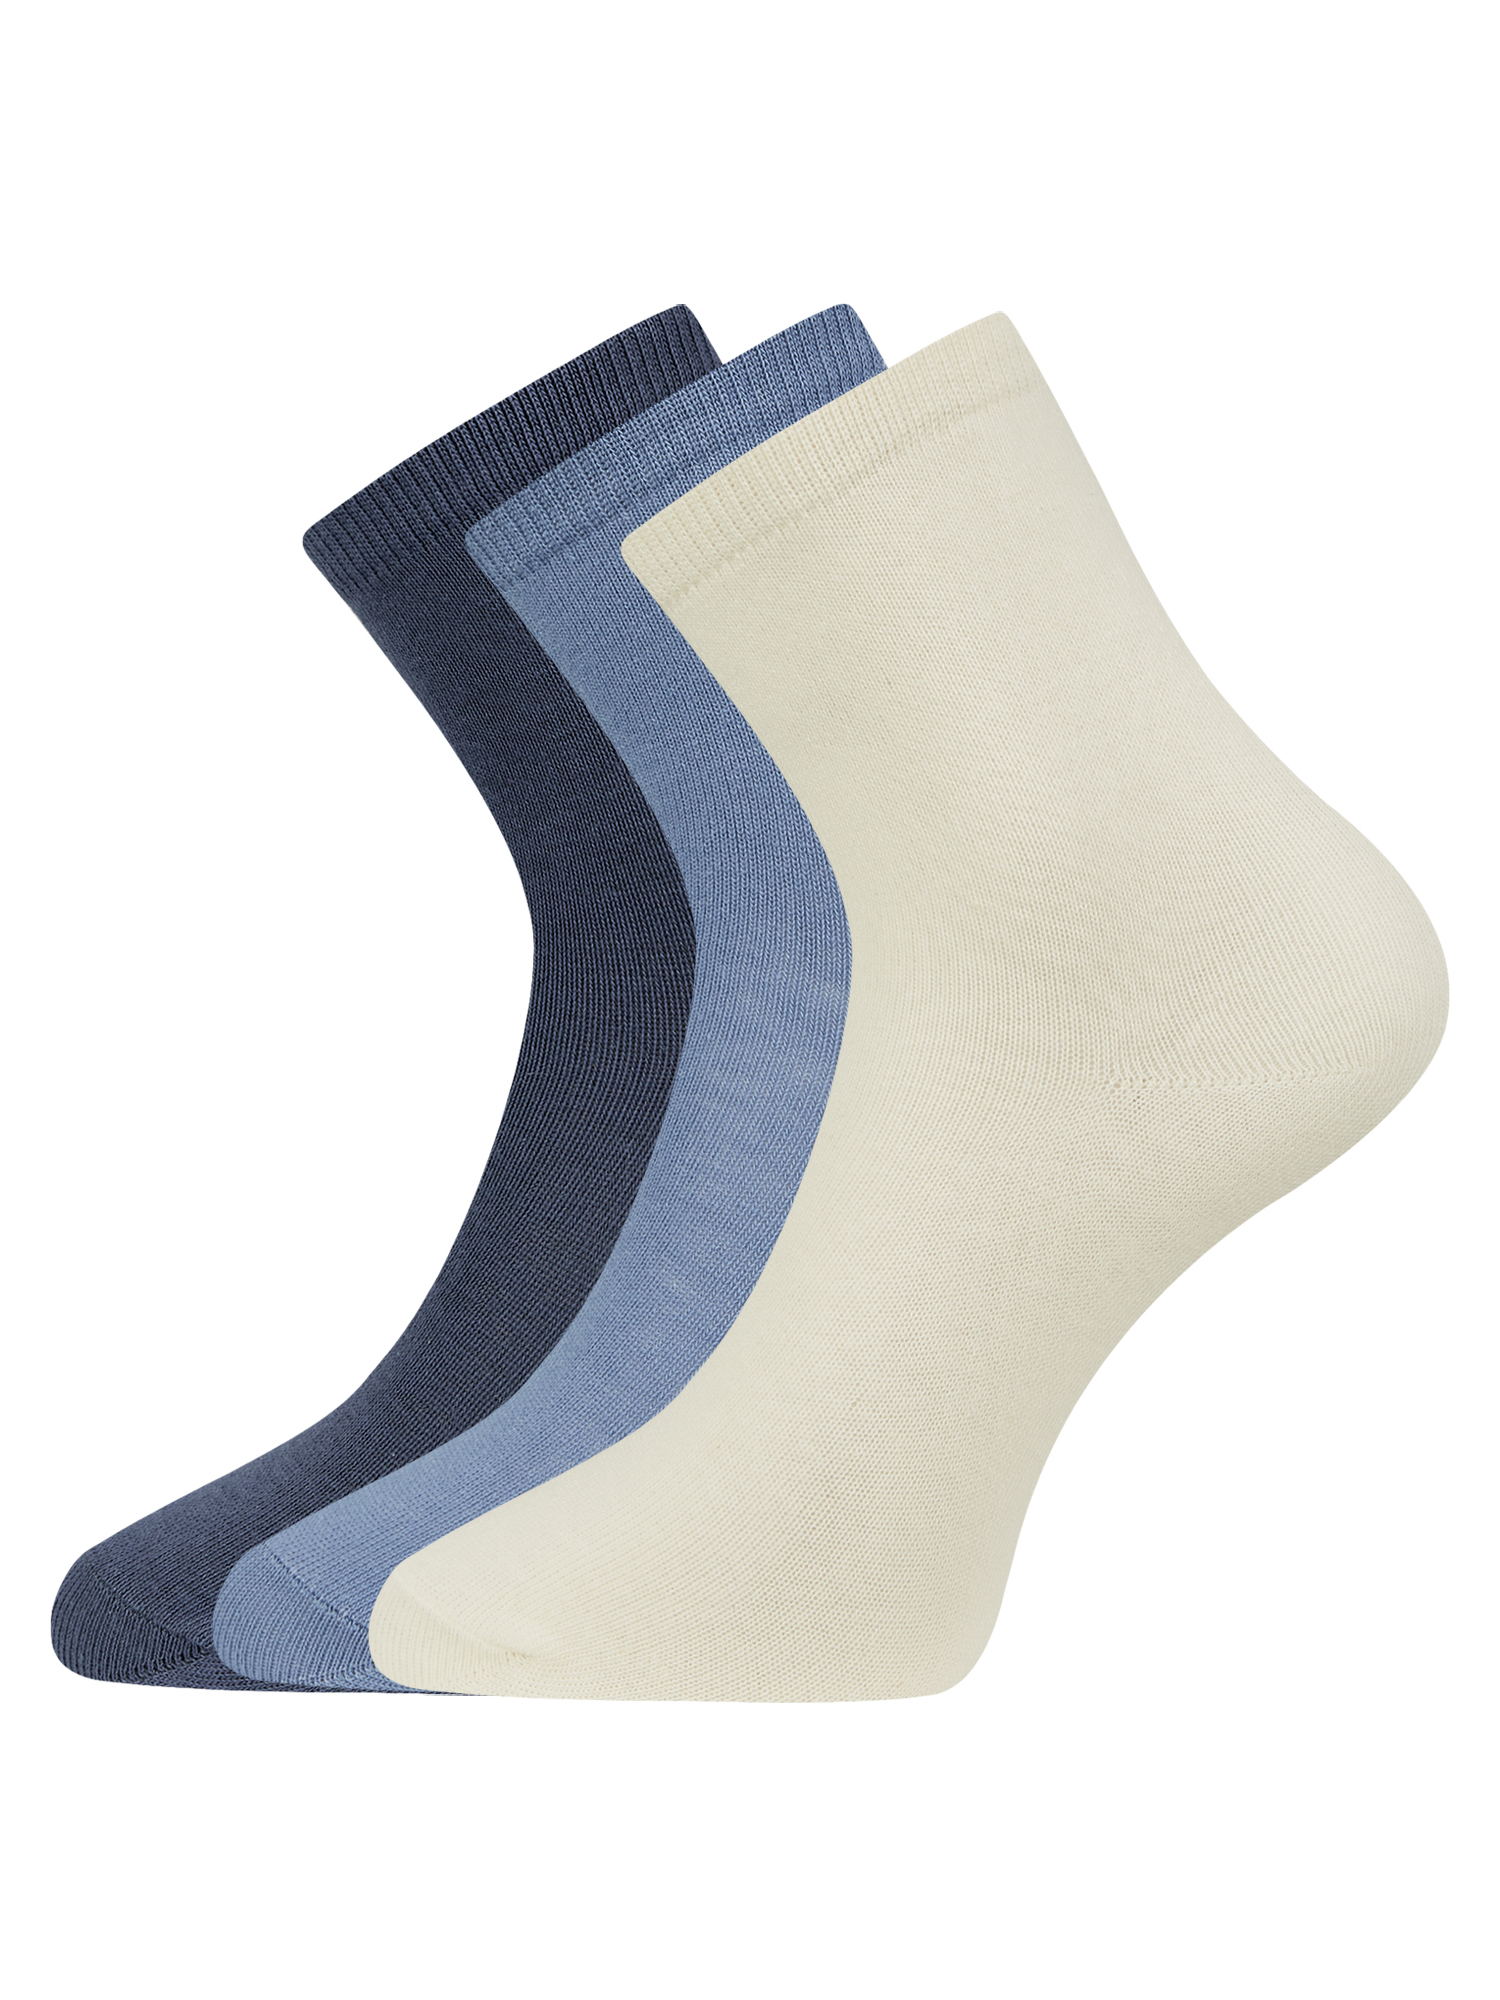 Комплект носков женских oodji 57102466T3 разноцветных 35-37